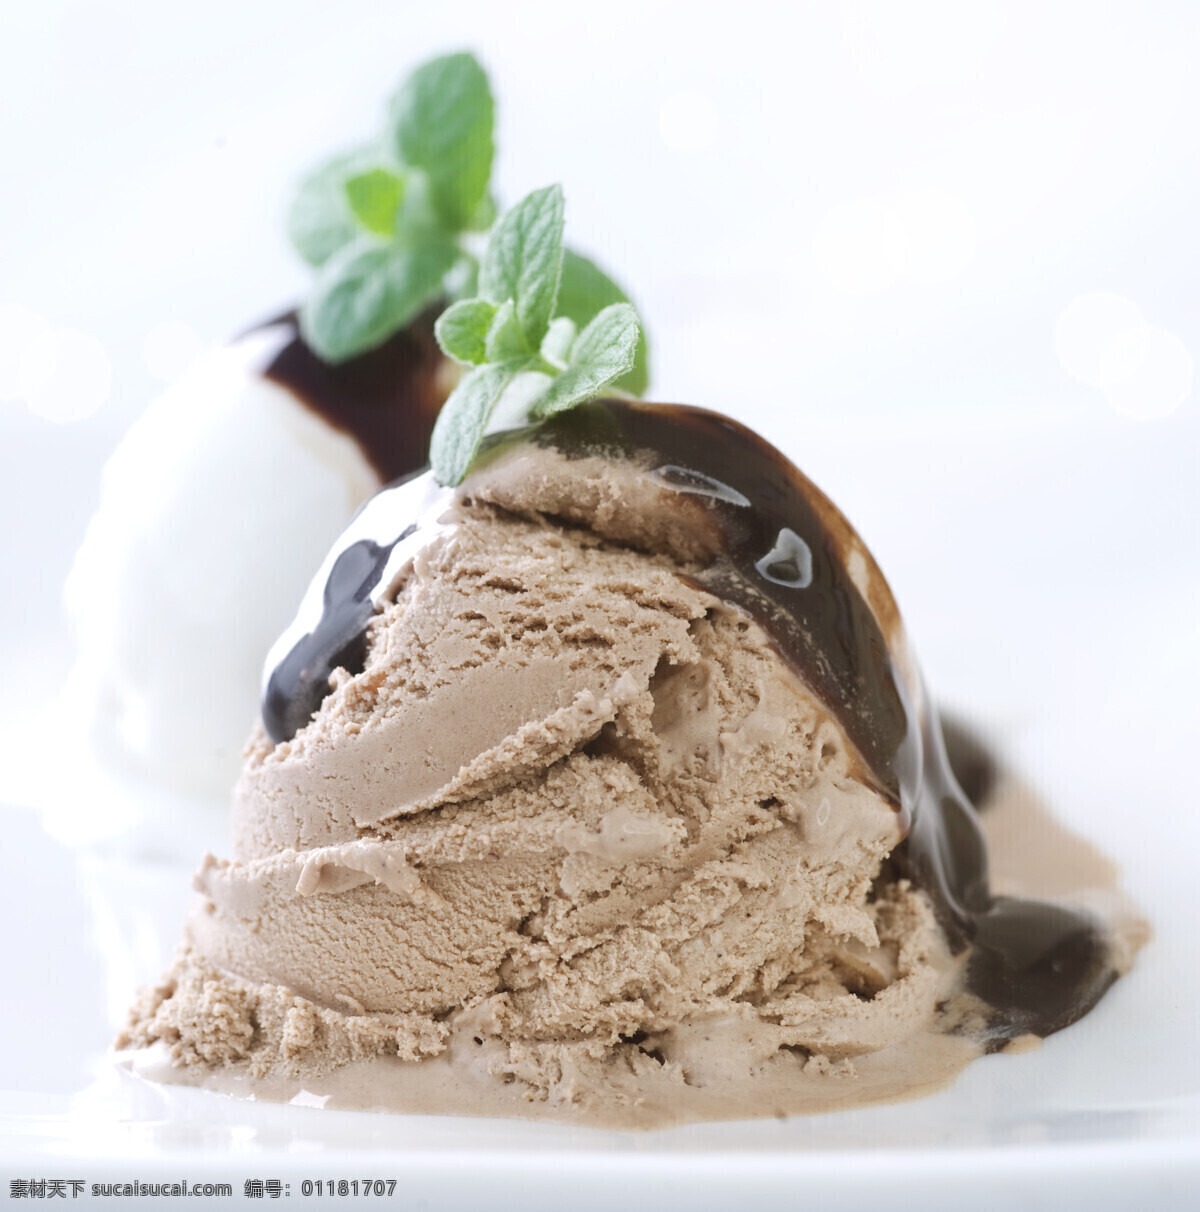 冰 激 淋 冰淇淋 冰激淋 巧克力 盘子 绿叶 冷饮 美食 雪糕 摄影图片 食材原料 餐饮美食